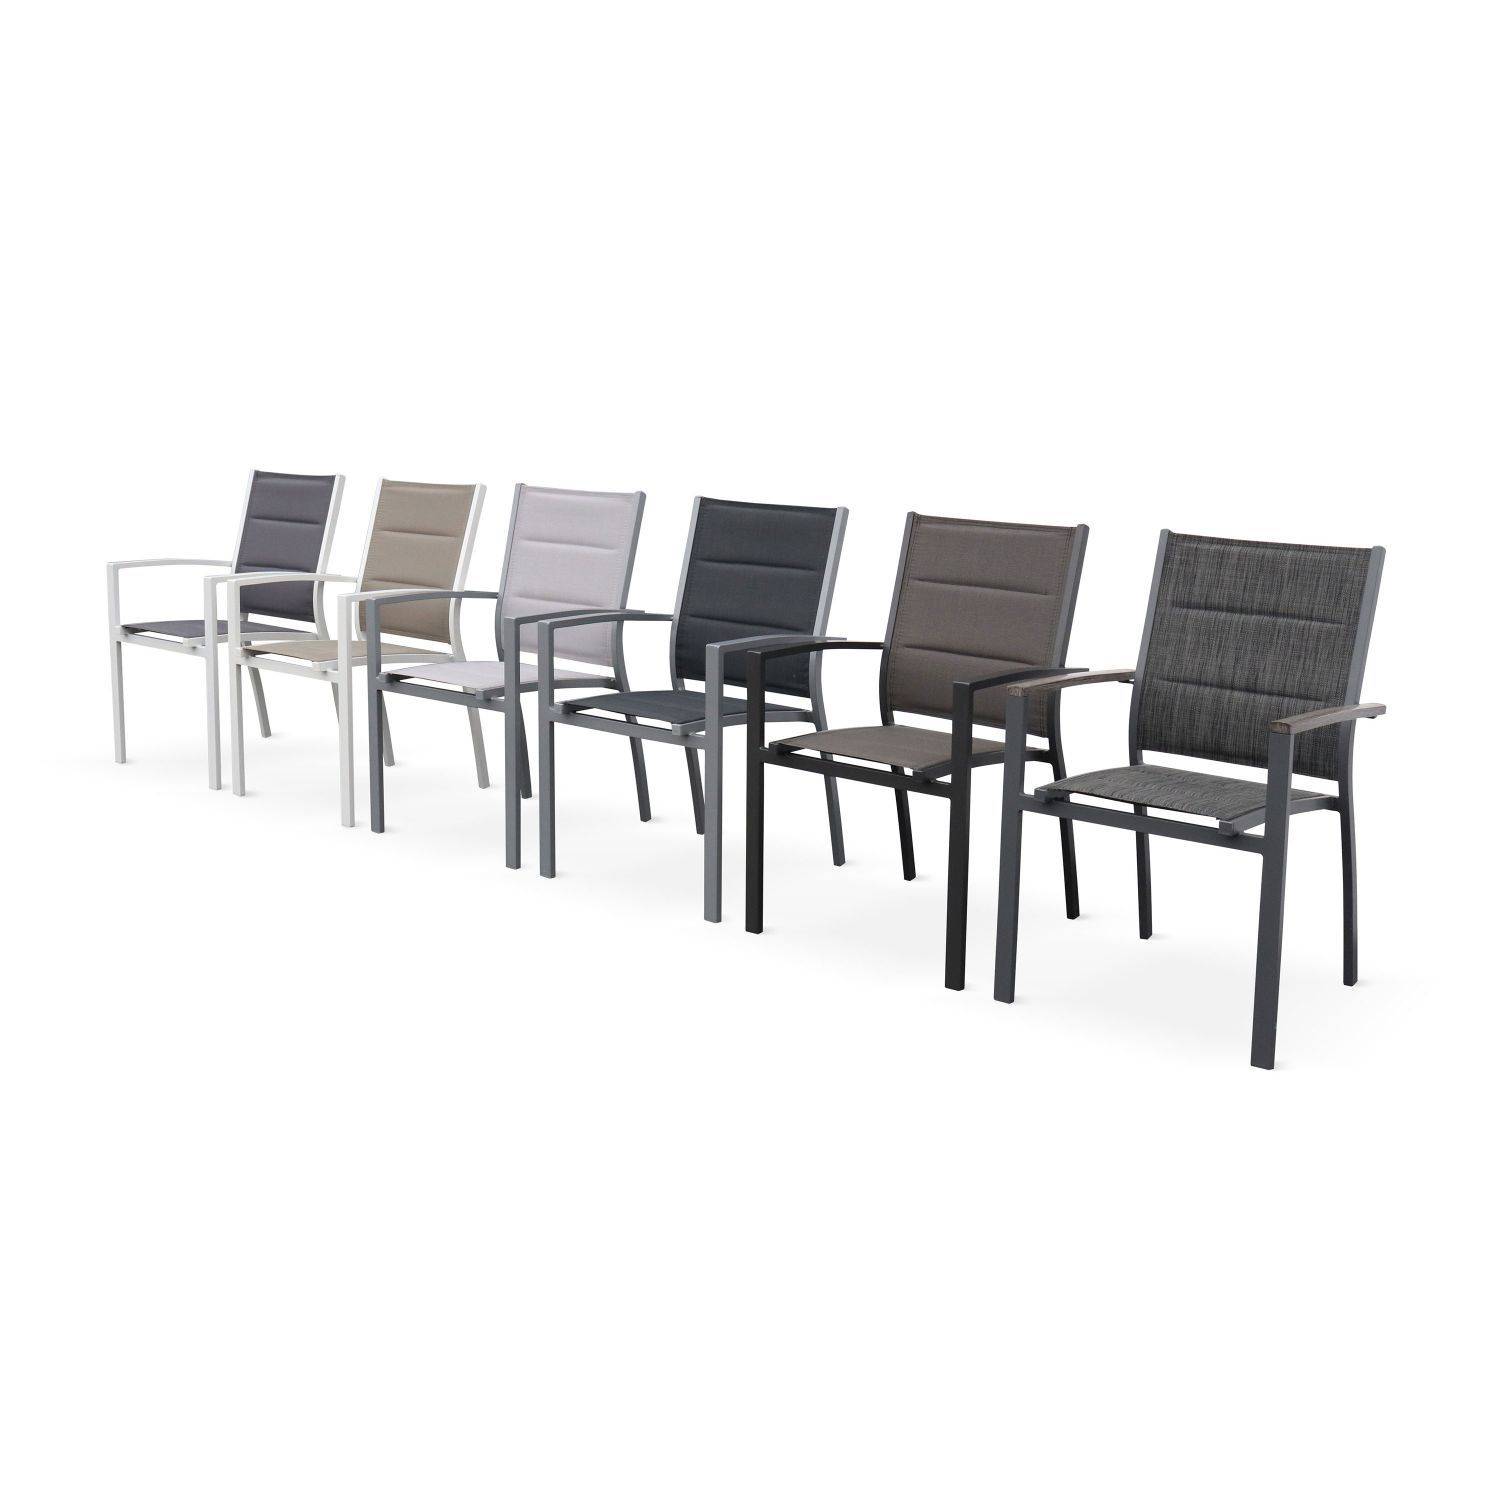 Set mit 2 Chicago-Sesseln - Weißes Aluminium und dunkelgraues Textilene, stapelbar Photo5